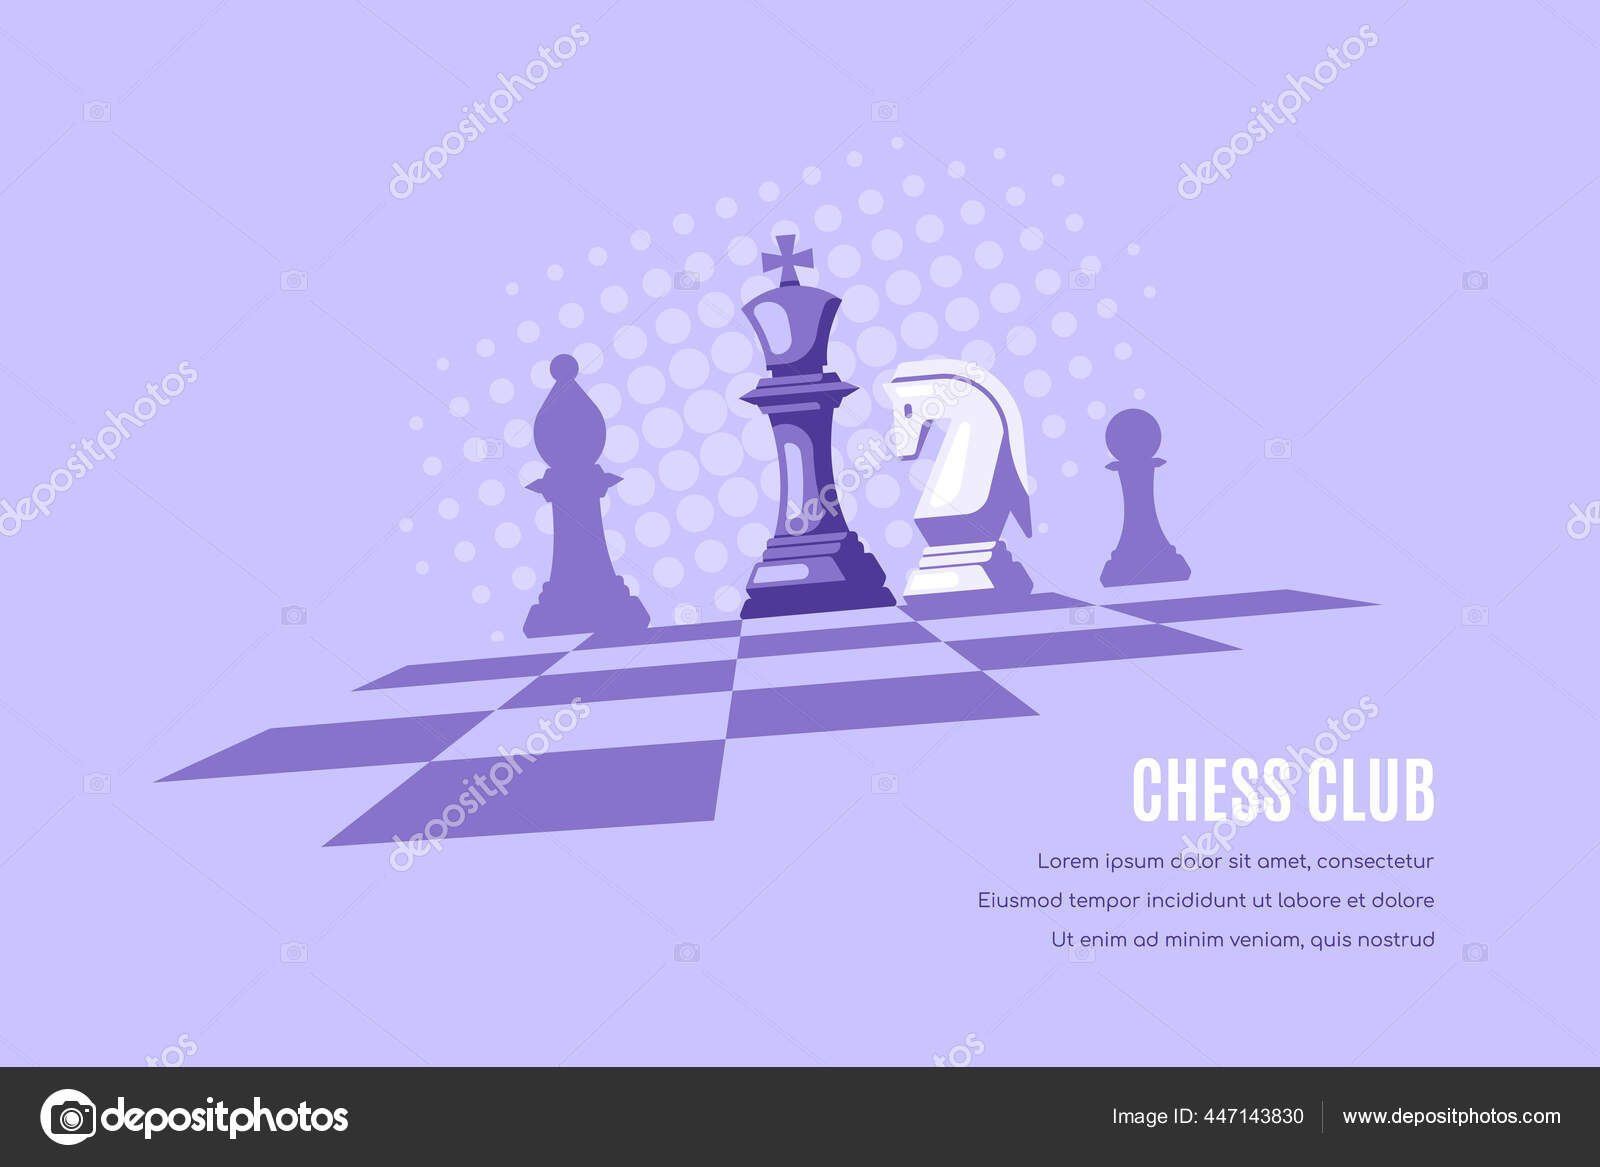 Símbolo colorido da ilustração do desenho da rainha do xadrez do